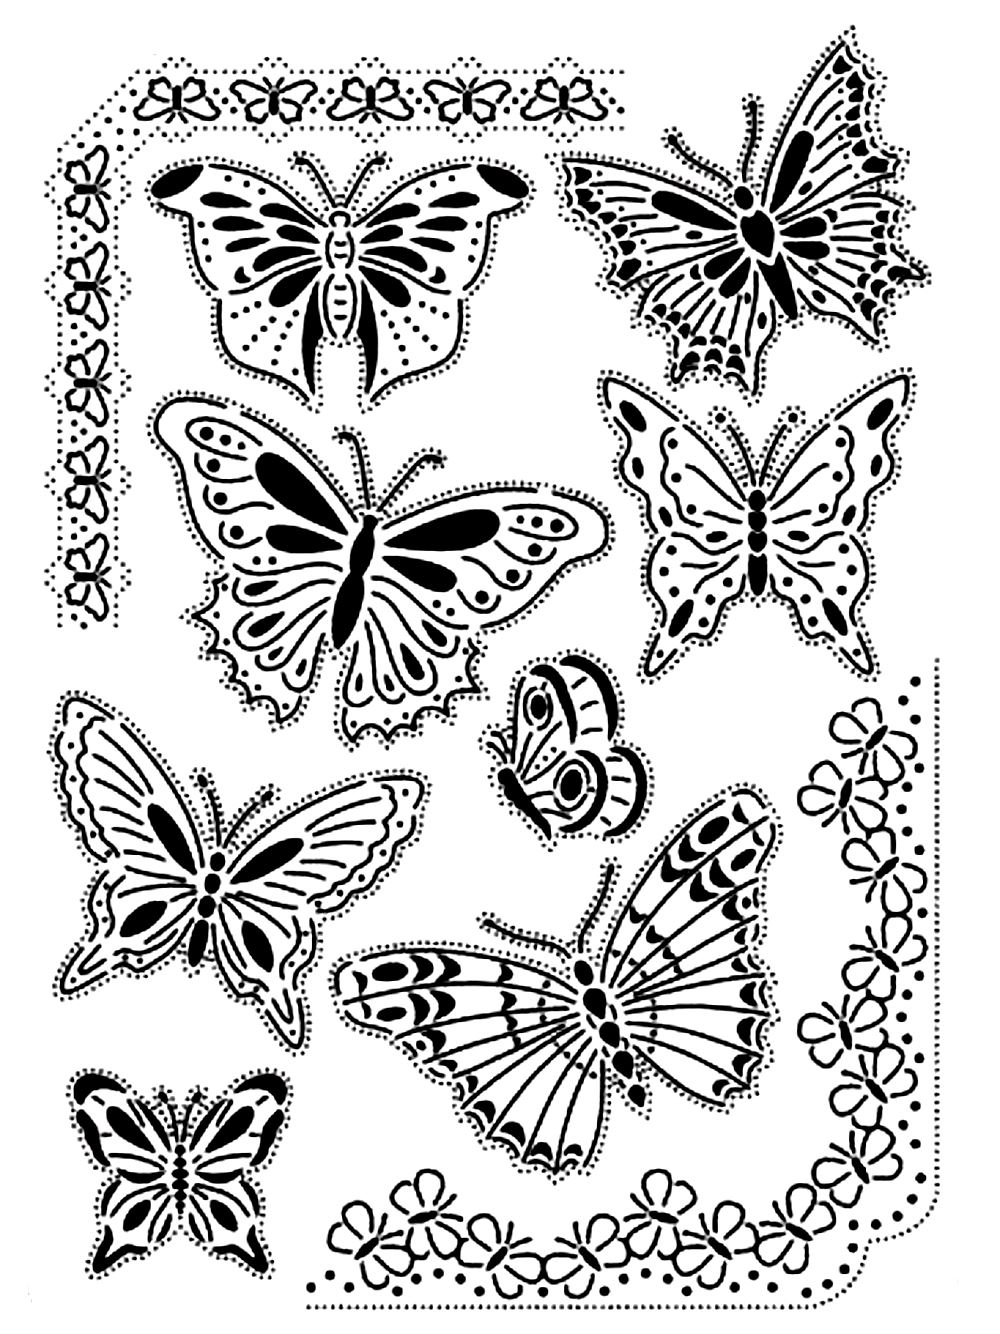 Image De Papillons À Imprimer Et Colorier - Coloriage De pour Coloriage Fleur Et Papillon A Imprimer